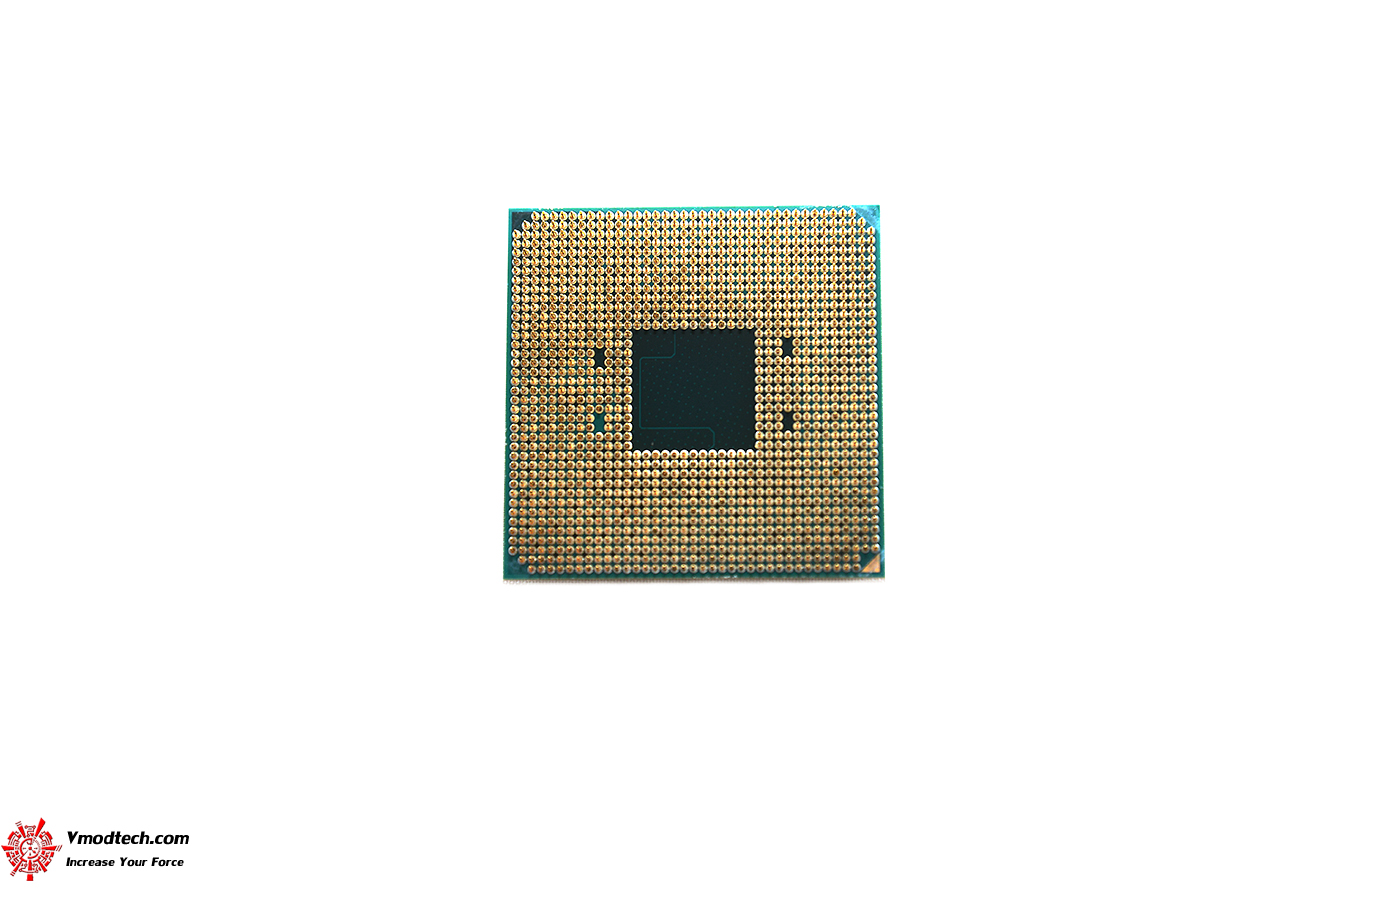 dsc 6631 AMD RYZEN 5 3400G PROCESSOR REVIEW 